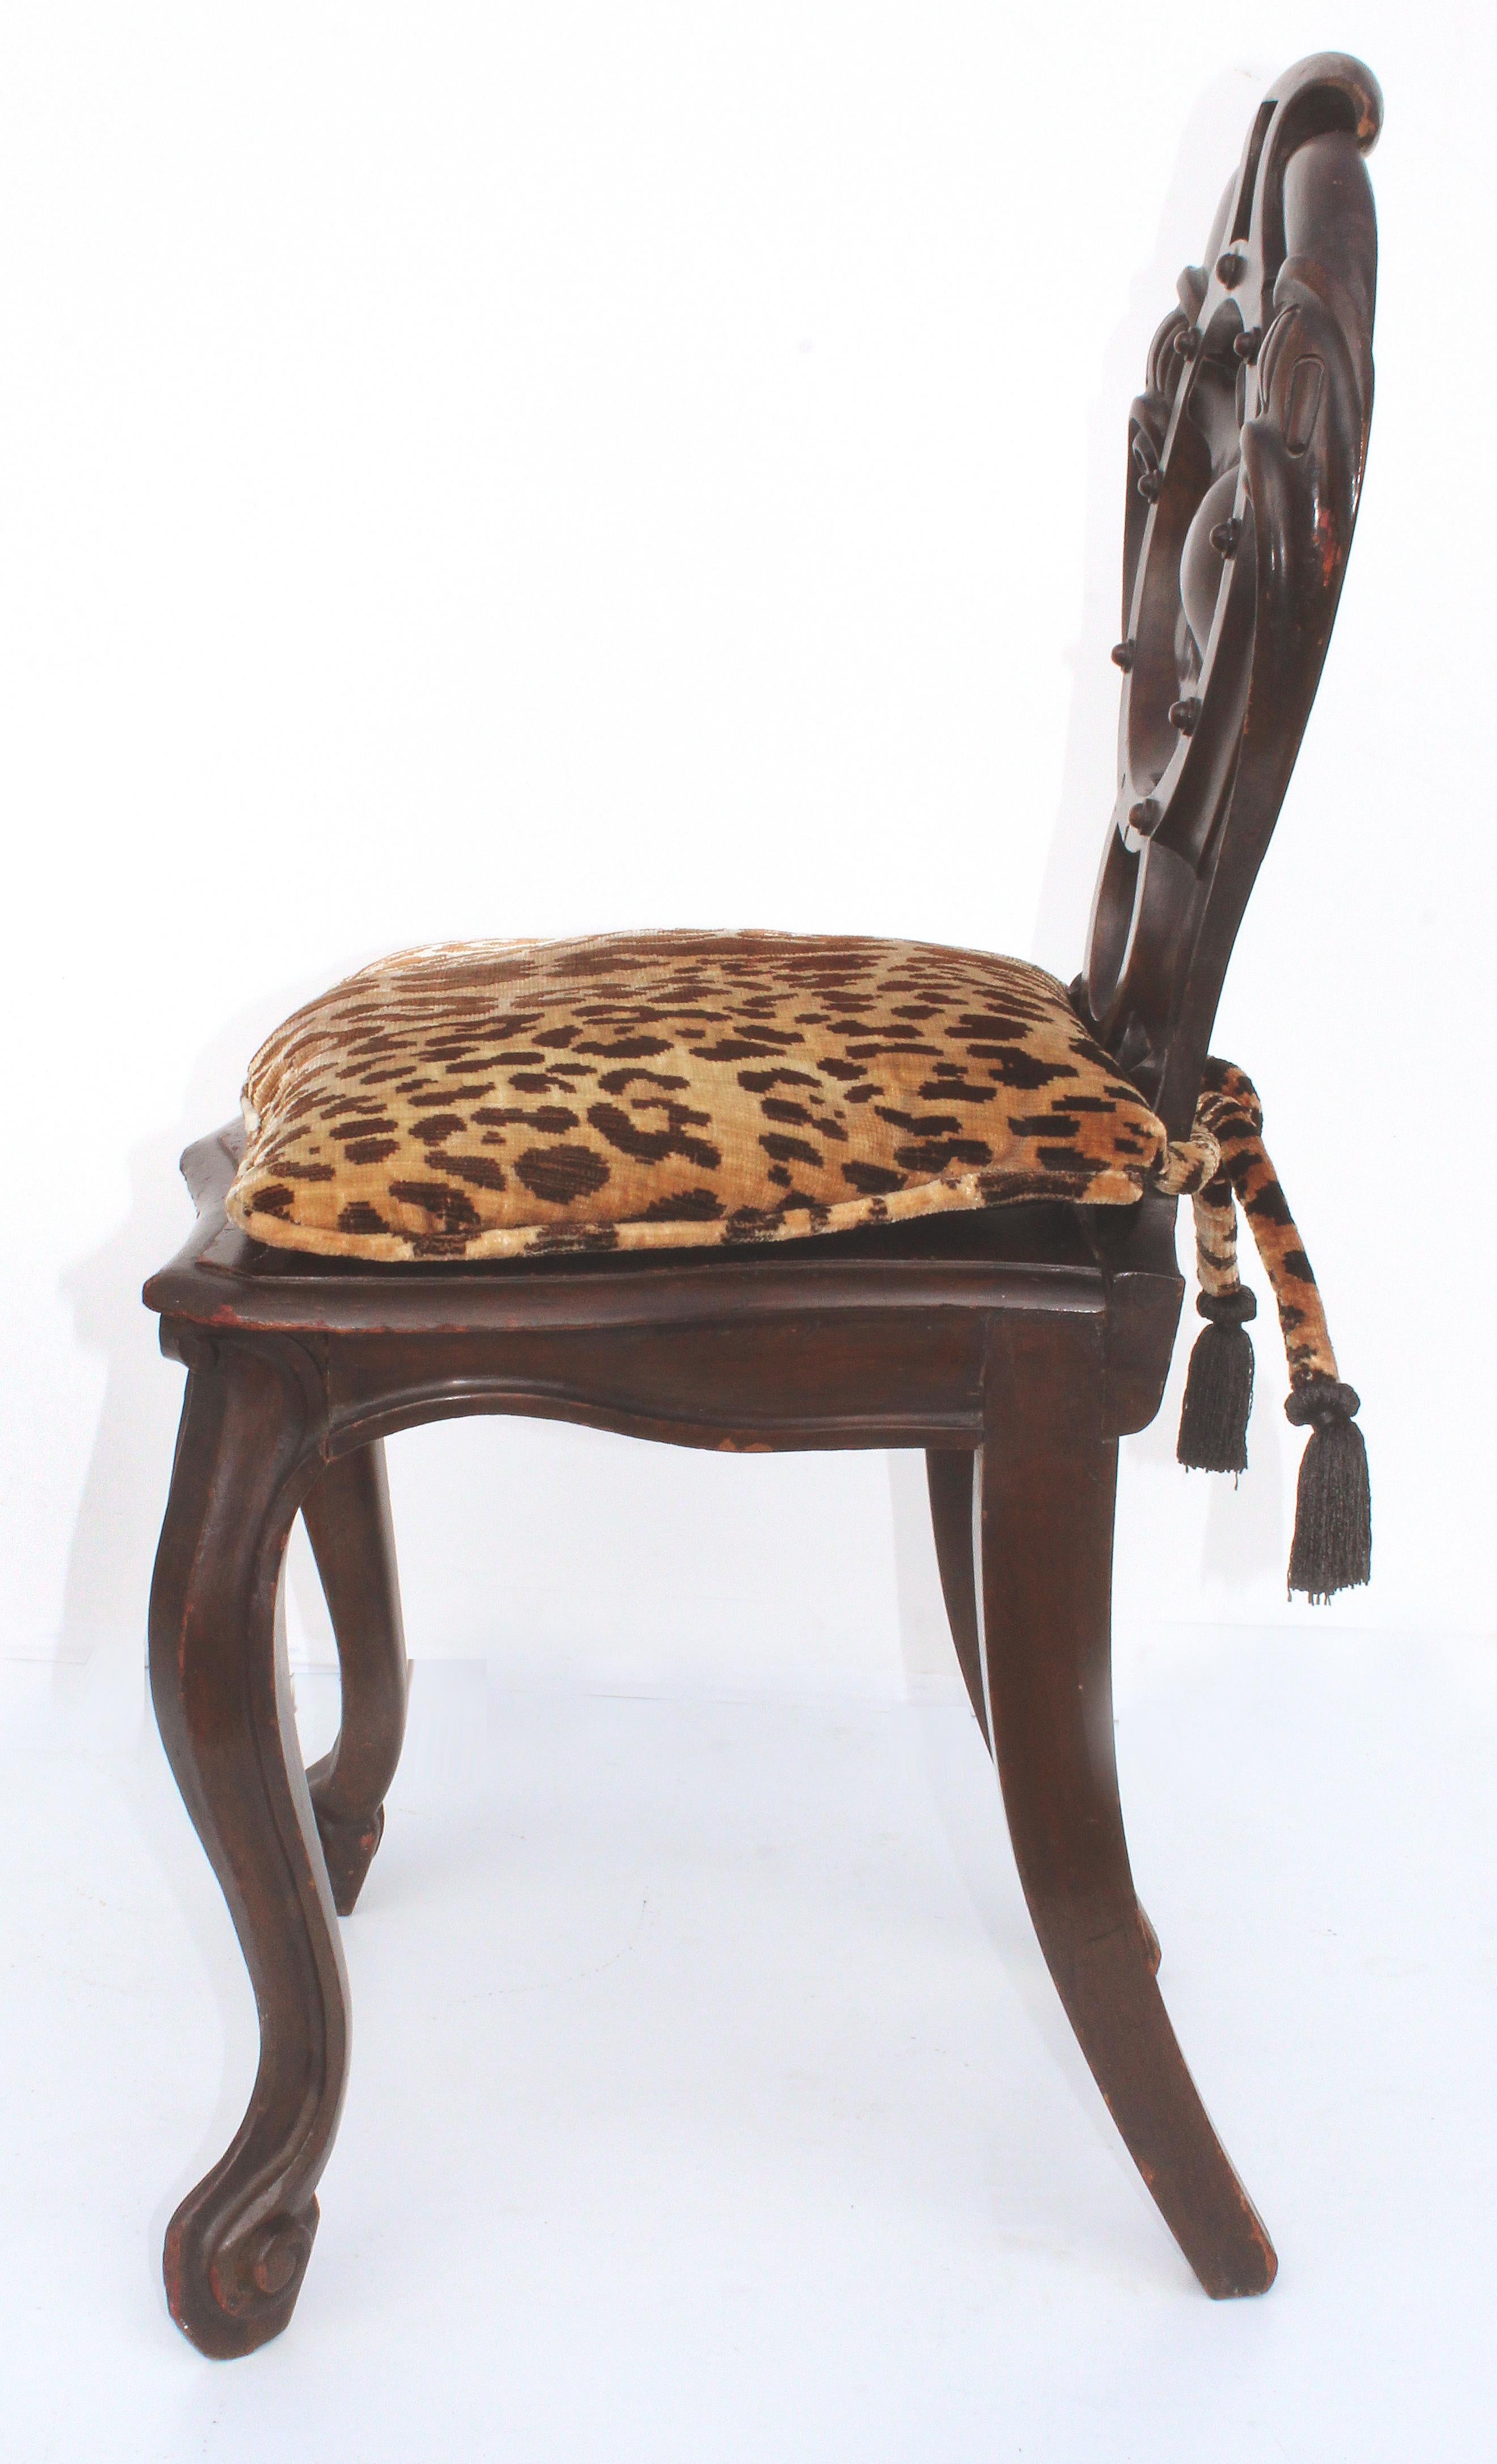 animal print chair cushions